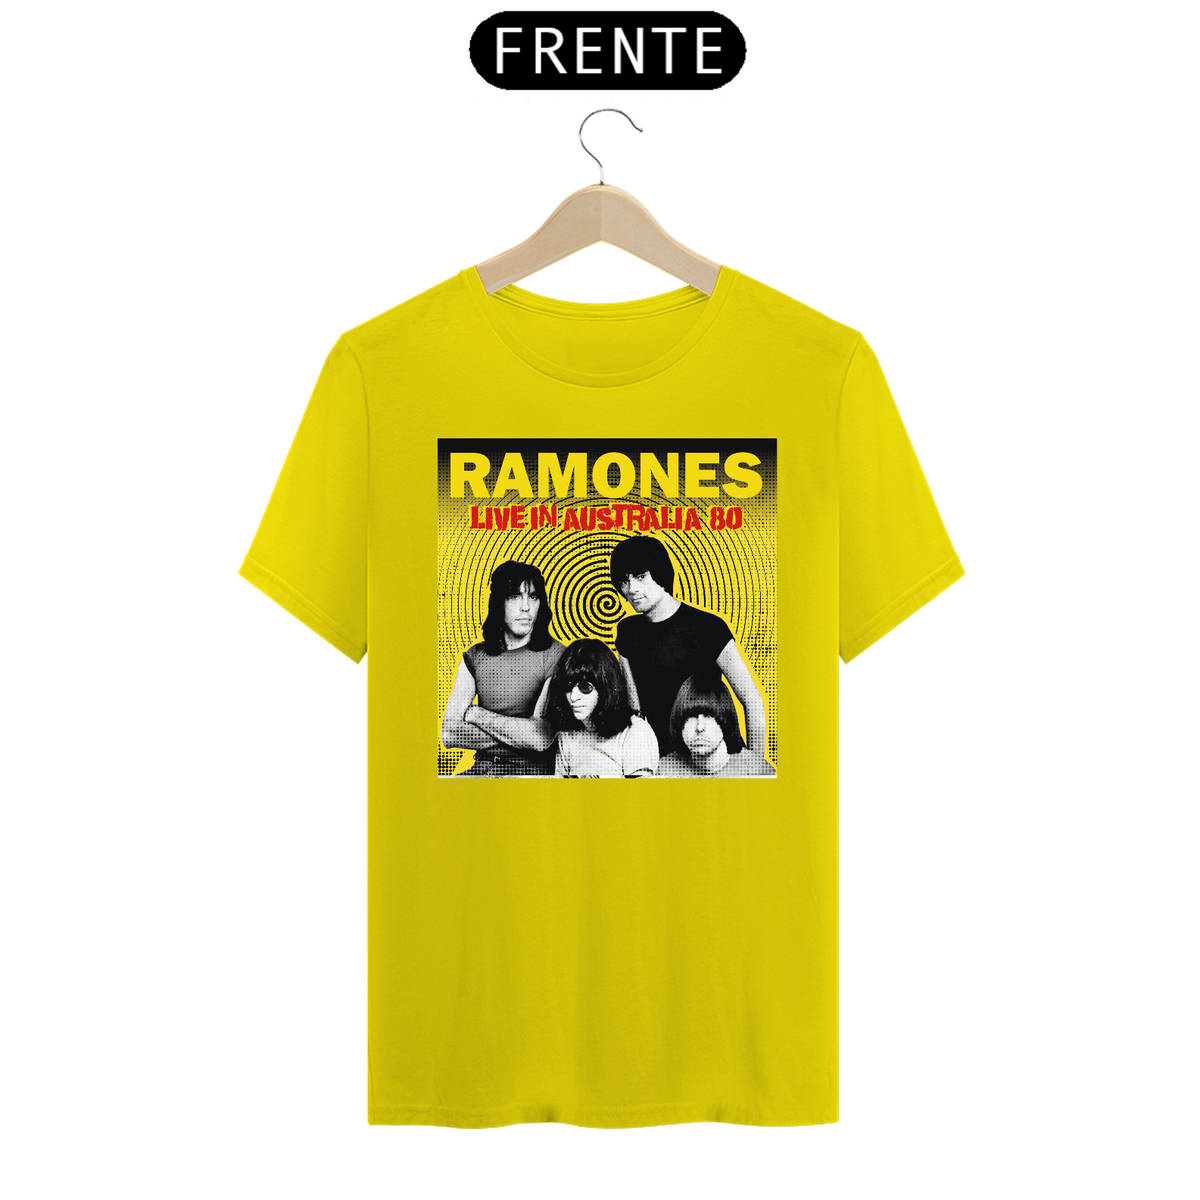 Nome do produto: Ramones - Live in Australia 80